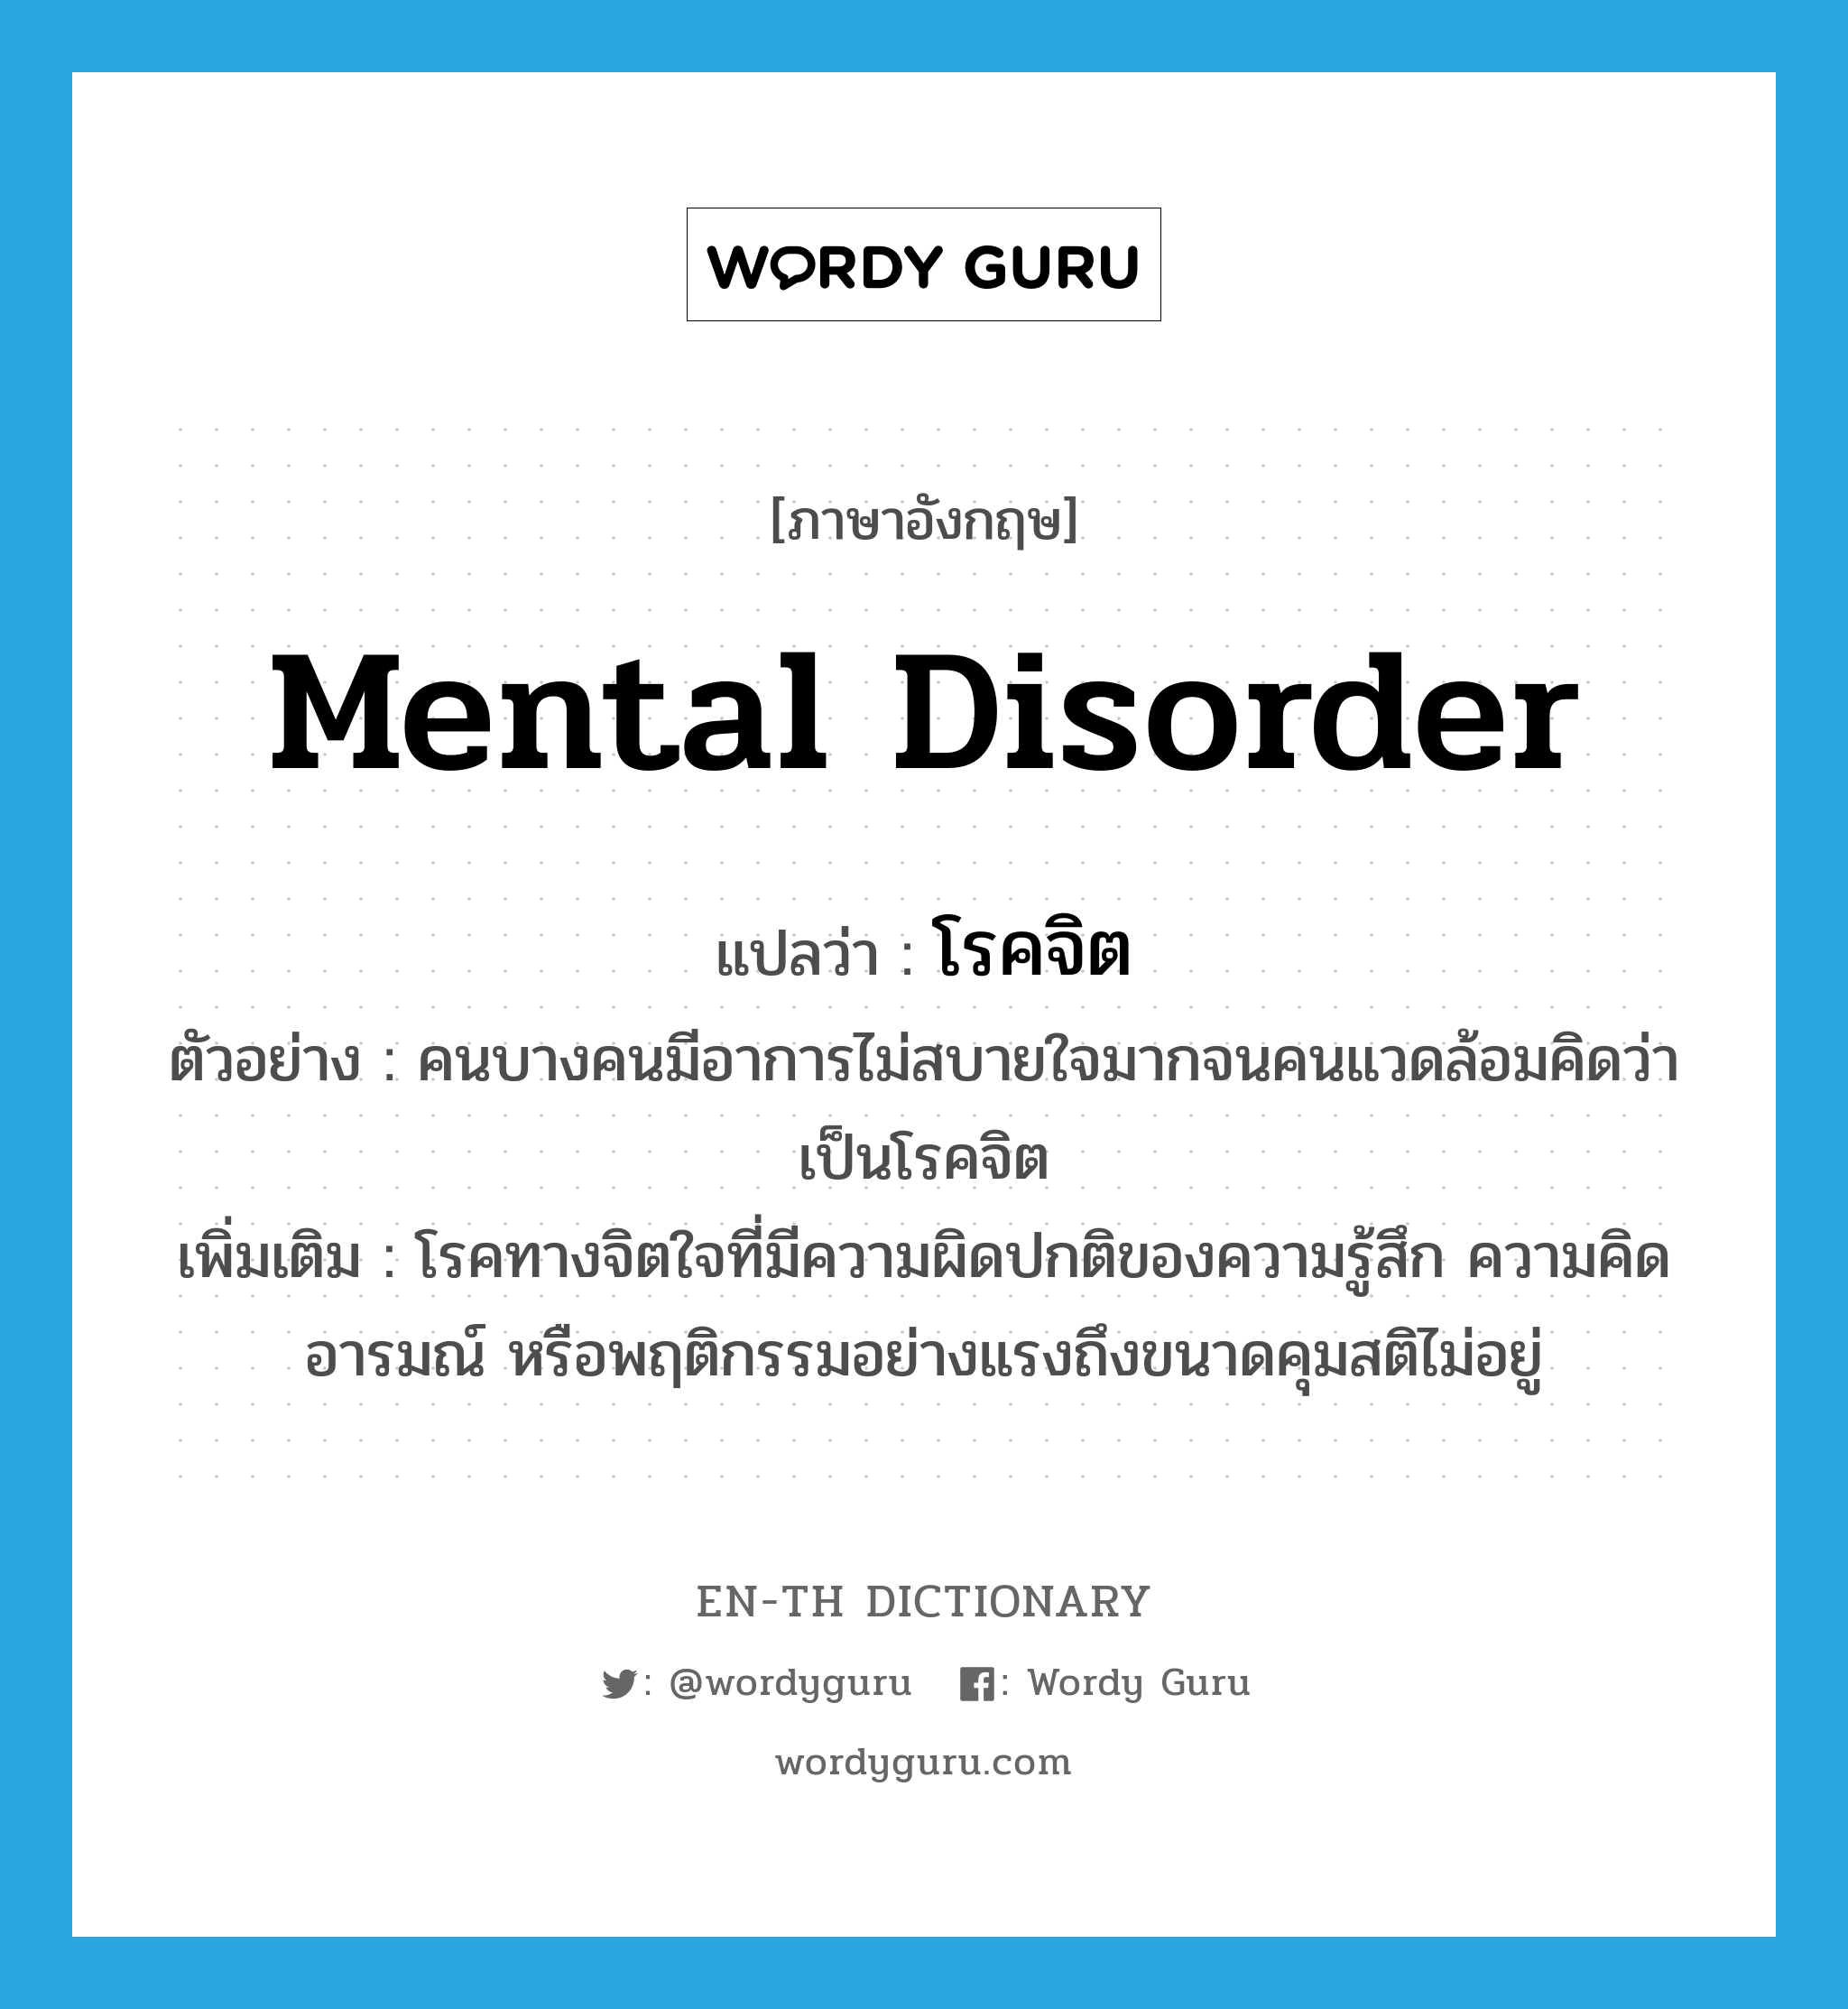 mental disorder แปลว่า?, คำศัพท์ภาษาอังกฤษ mental disorder แปลว่า โรคจิต ประเภท N ตัวอย่าง คนบางคนมีอาการไม่สบายใจมากจนคนแวดล้อมคิดว่าเป็นโรคจิต เพิ่มเติม โรคทางจิตใจที่มีความผิดปกติของความรู้สึก ความคิด อารมณ์ หรือพฤติกรรมอย่างแรงถึงขนาดคุมสติไม่อยู่ หมวด N